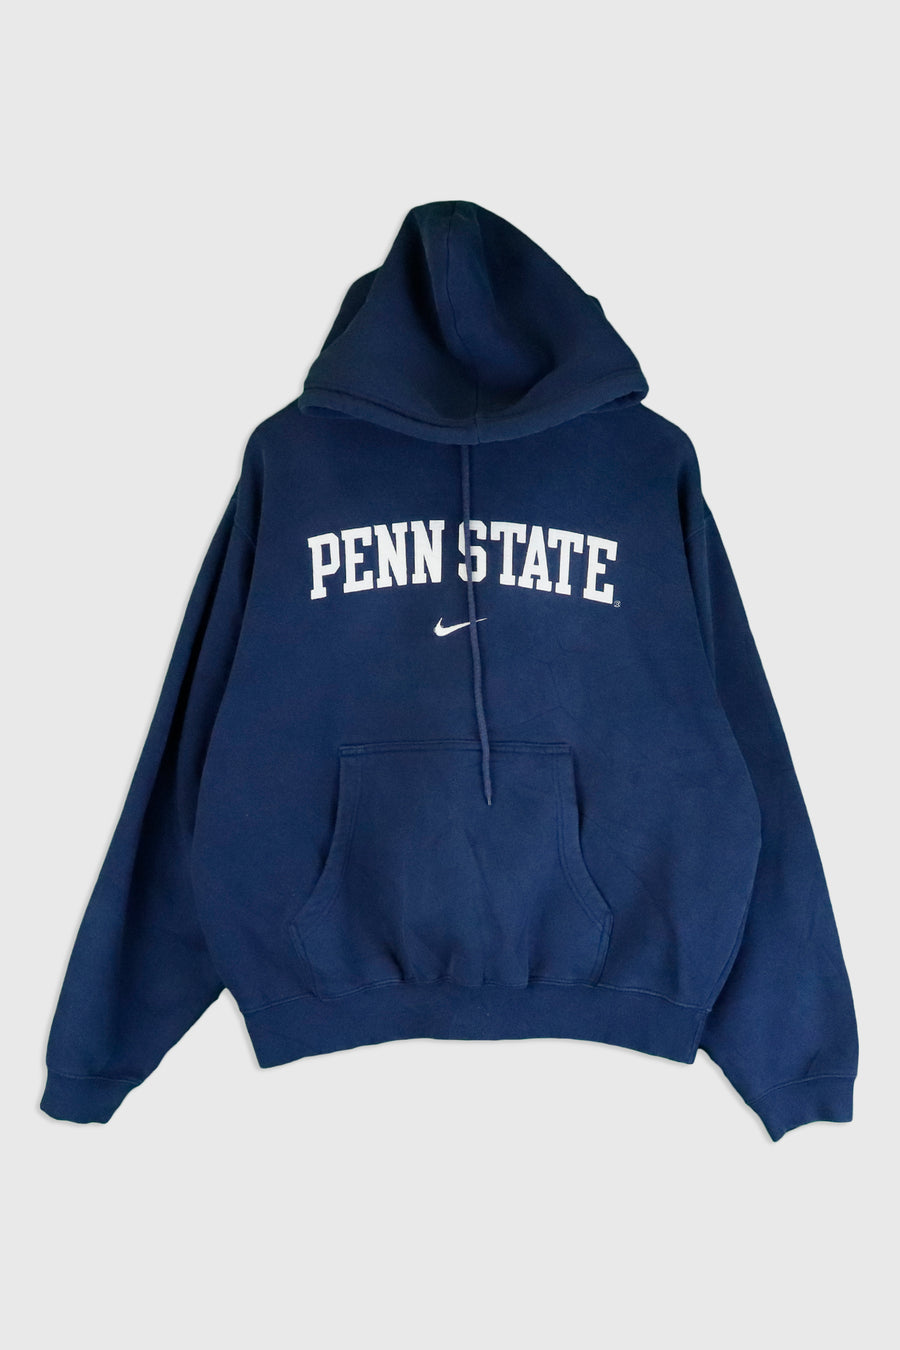 Vintage Nike Penn State Jacket Sz L